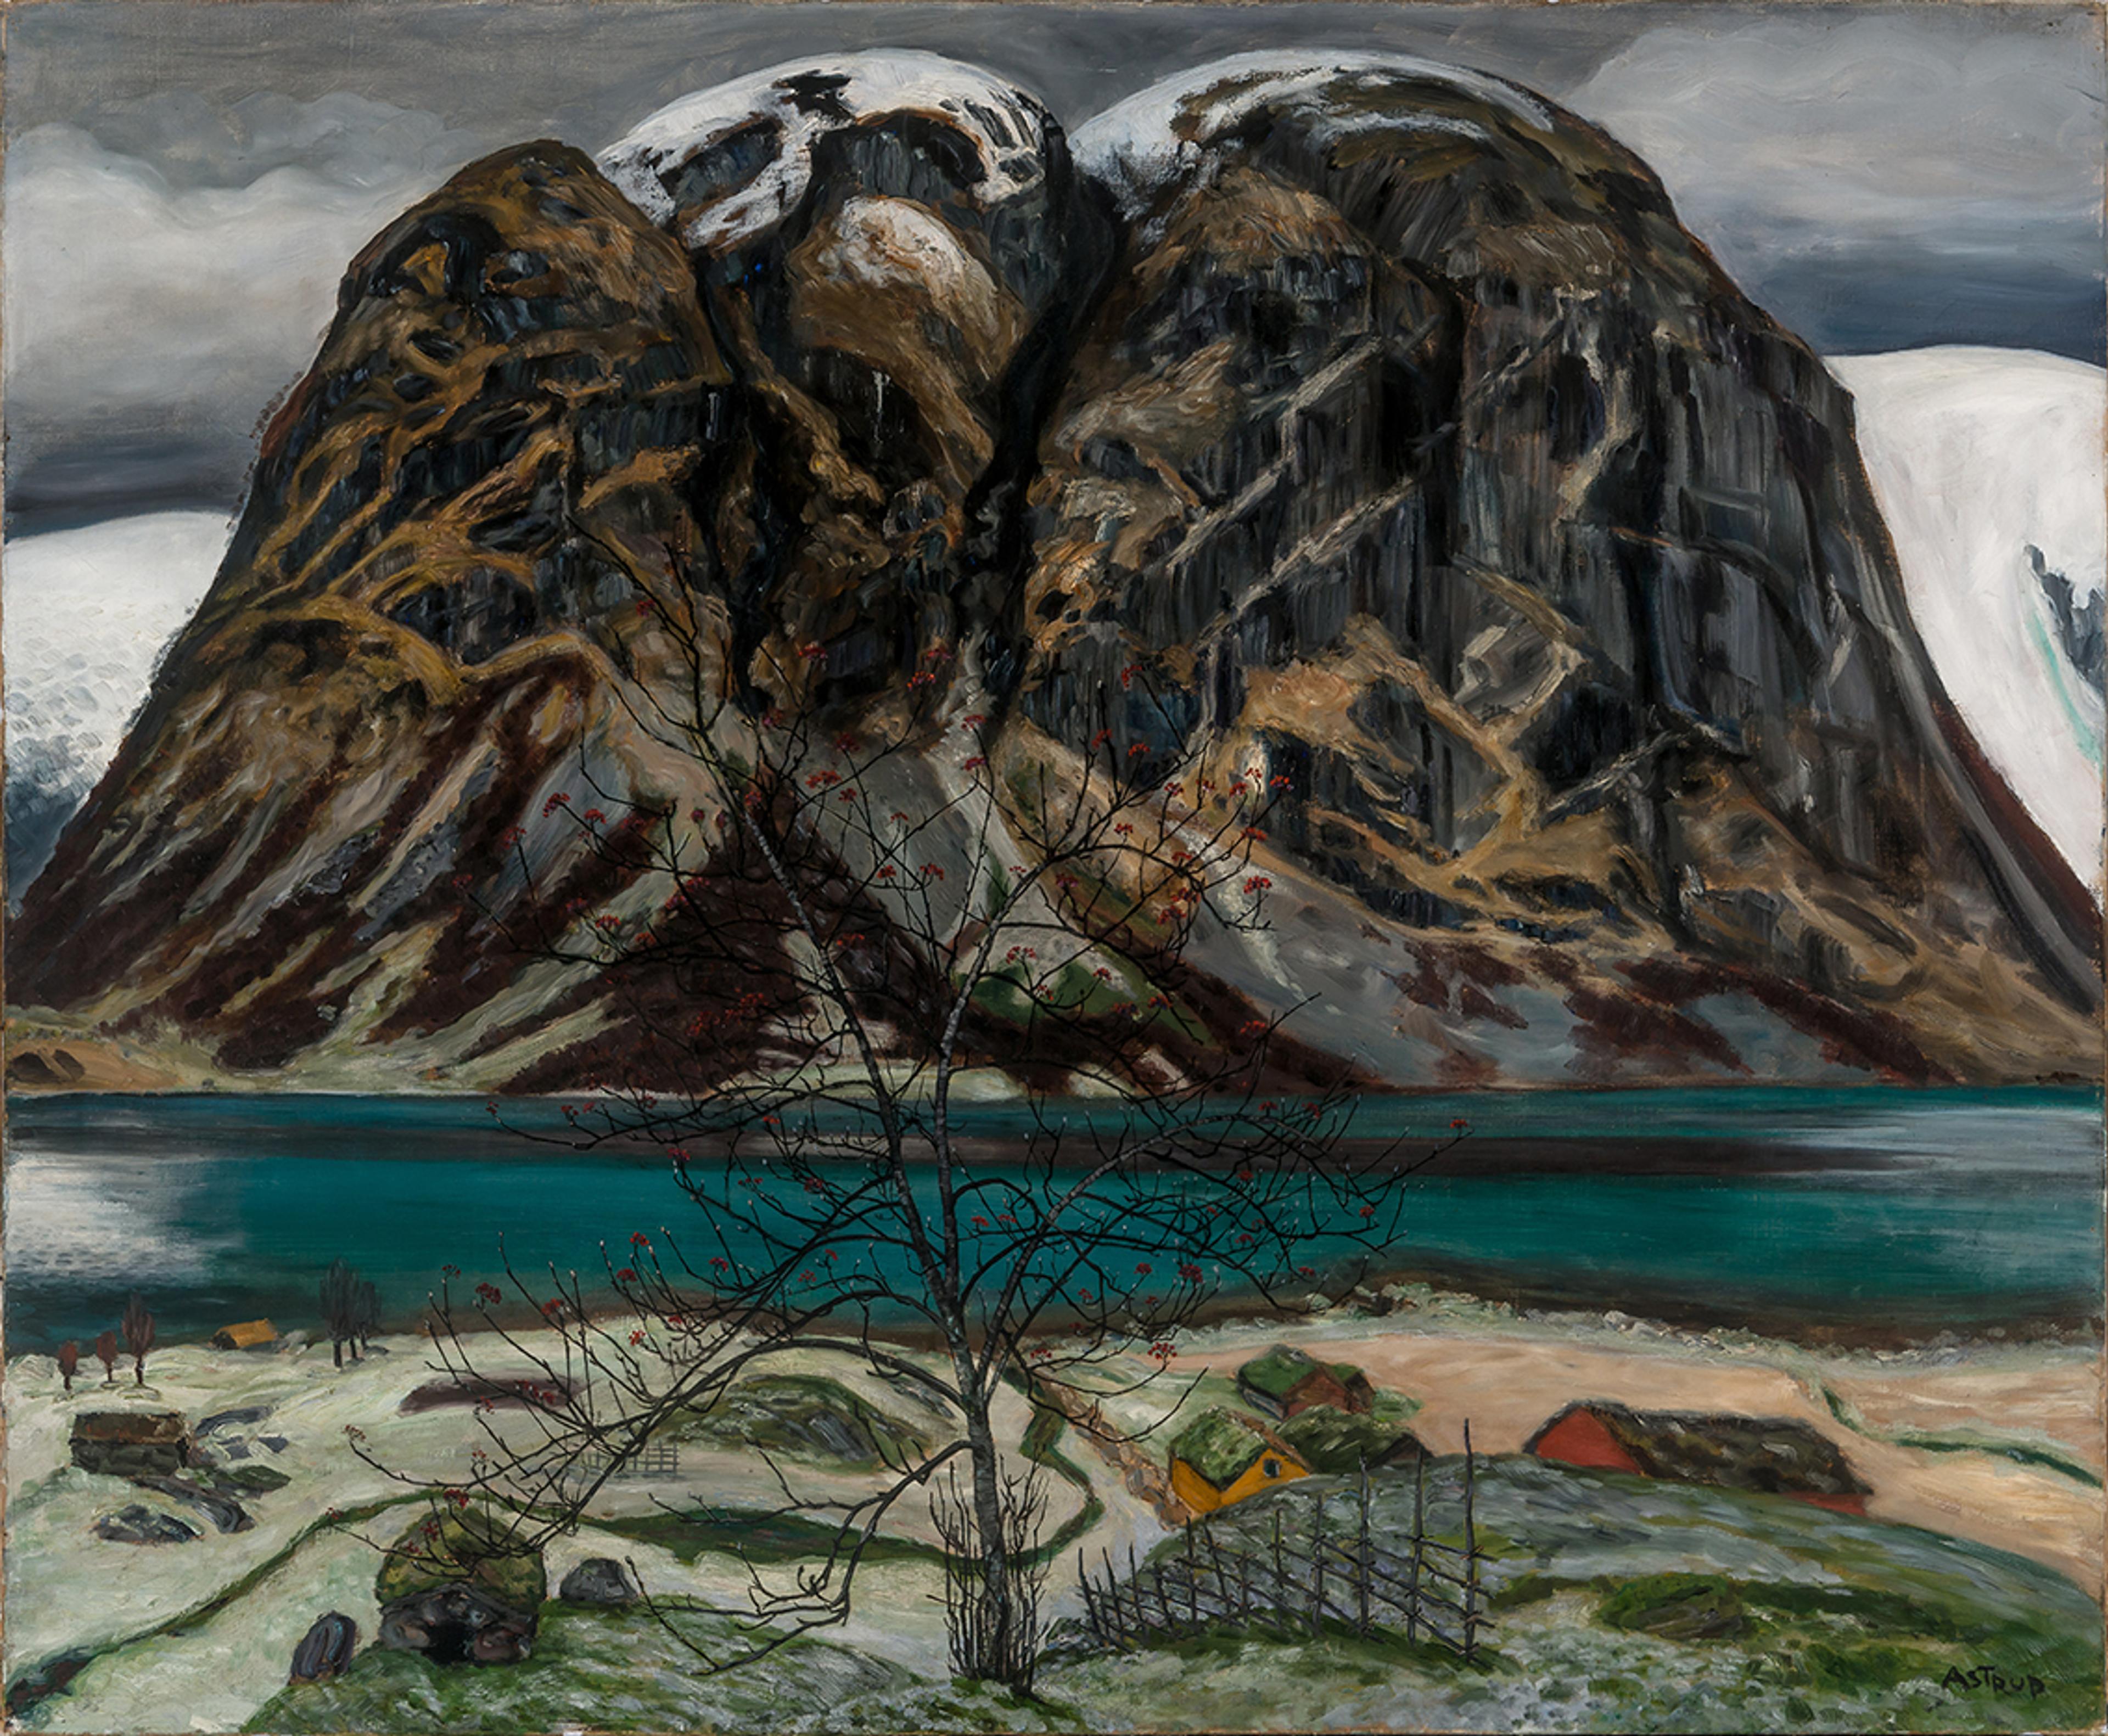 Et maleri av Nikolai Astrup, som viser et stort fjell malt i mørke grå og brune toner. I forgrunnen ser vi små hus, like ved et vann.